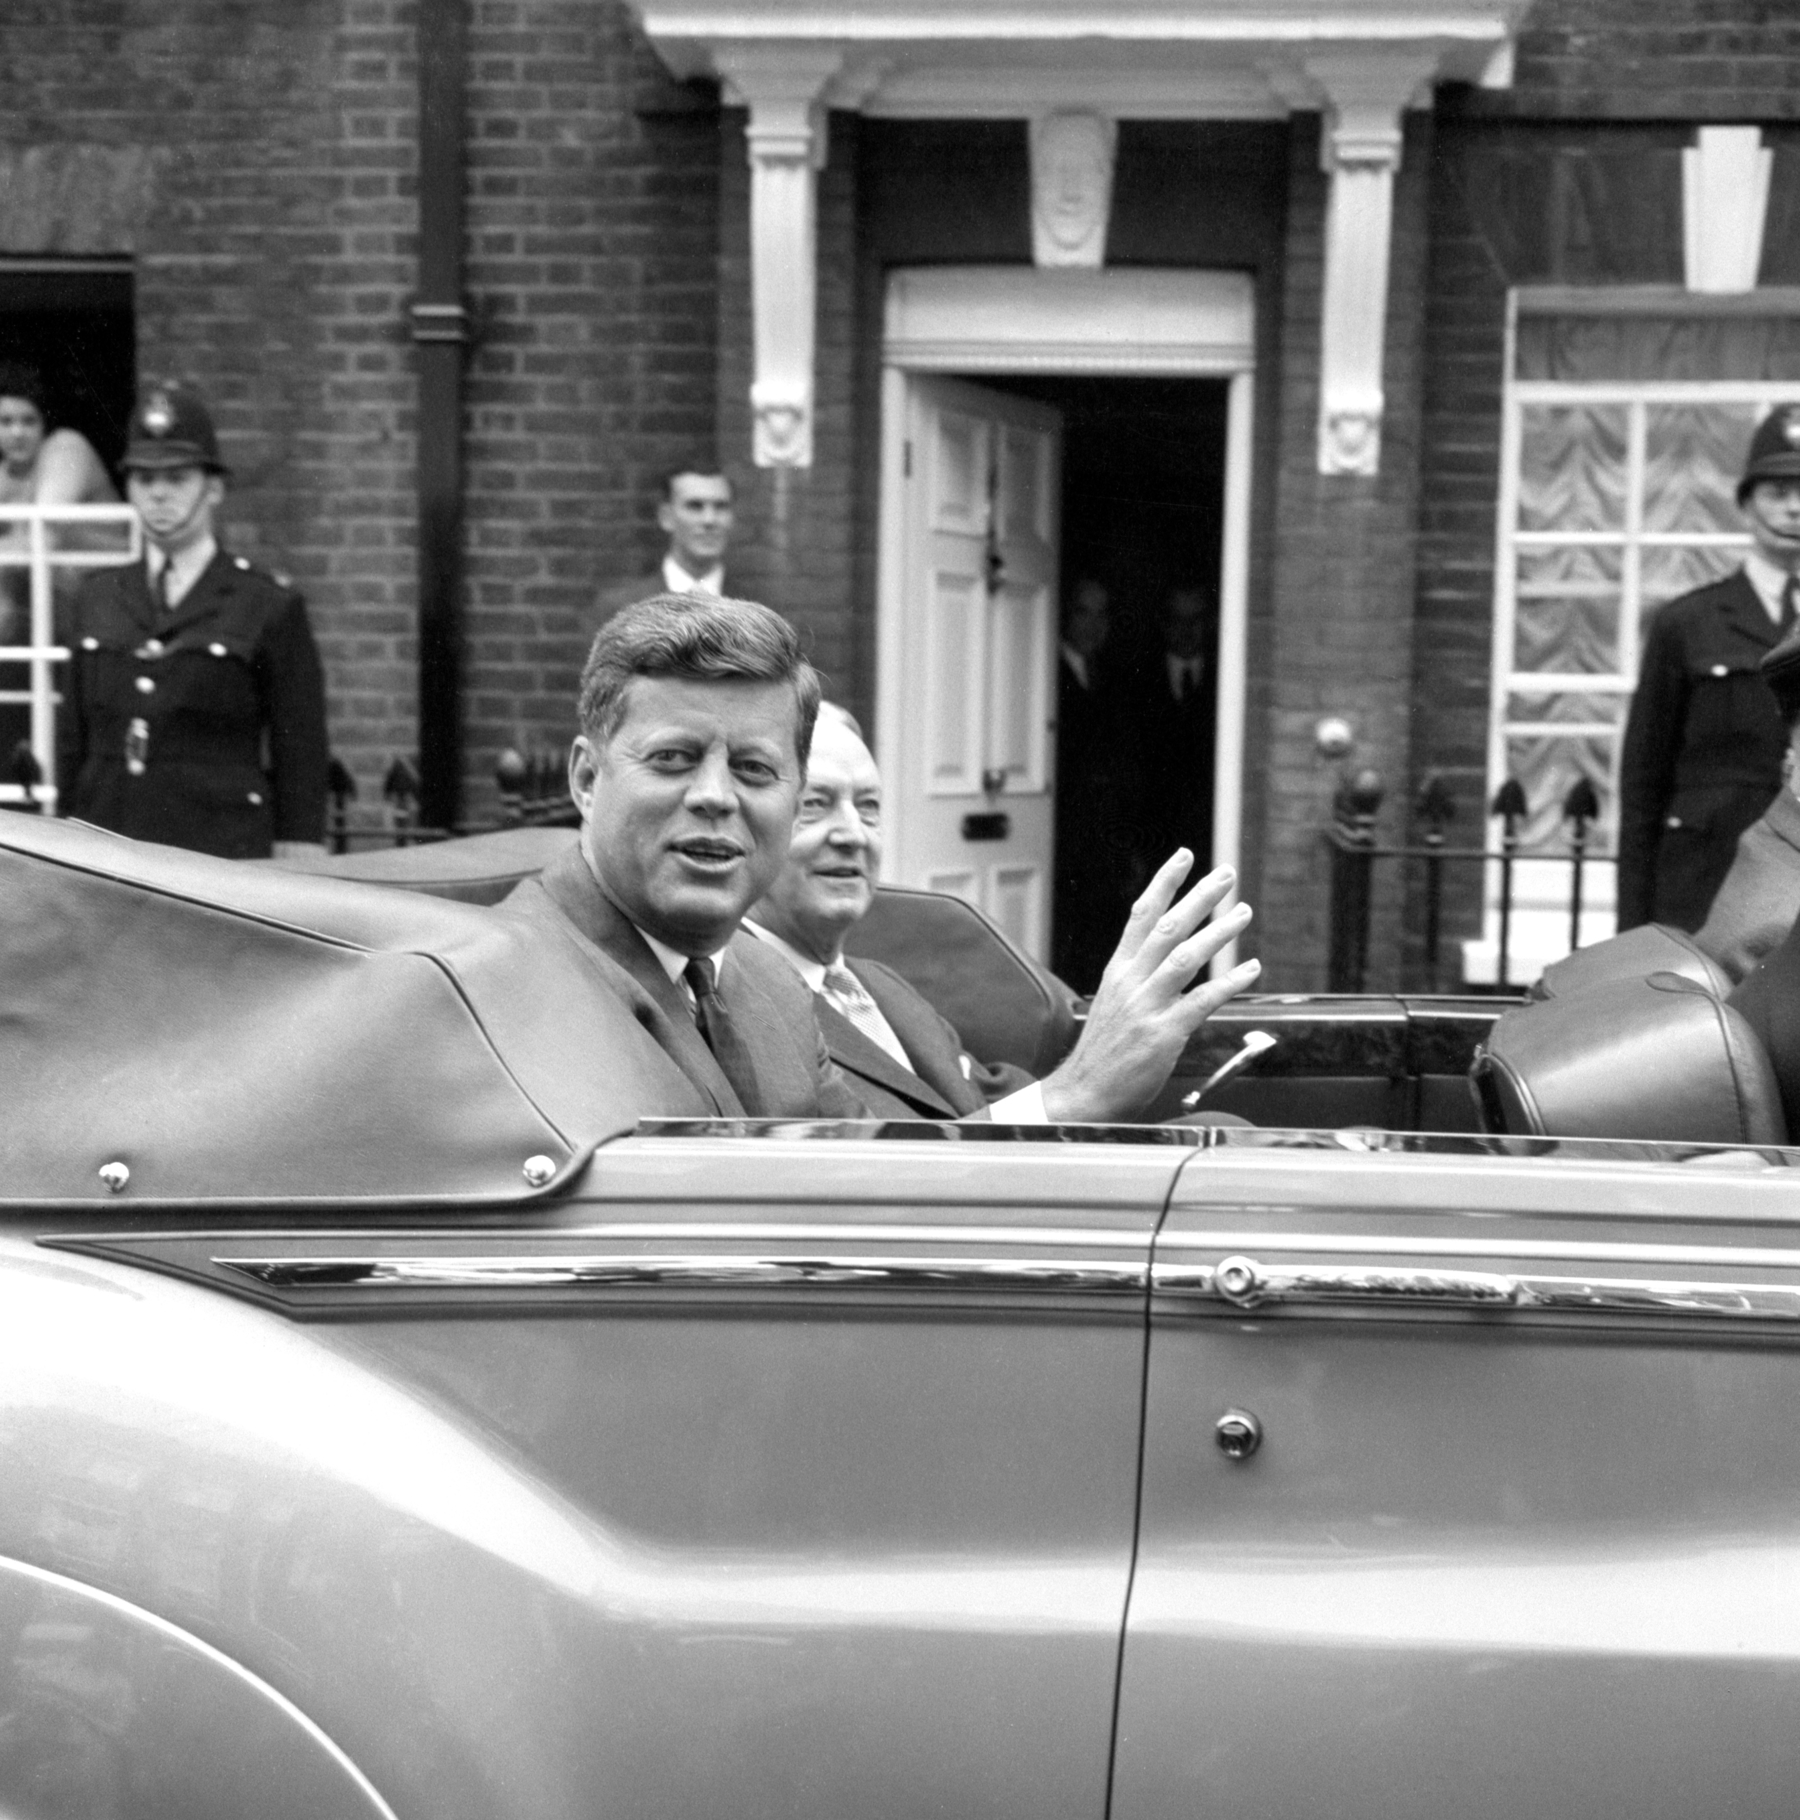 John F Kennedy in London